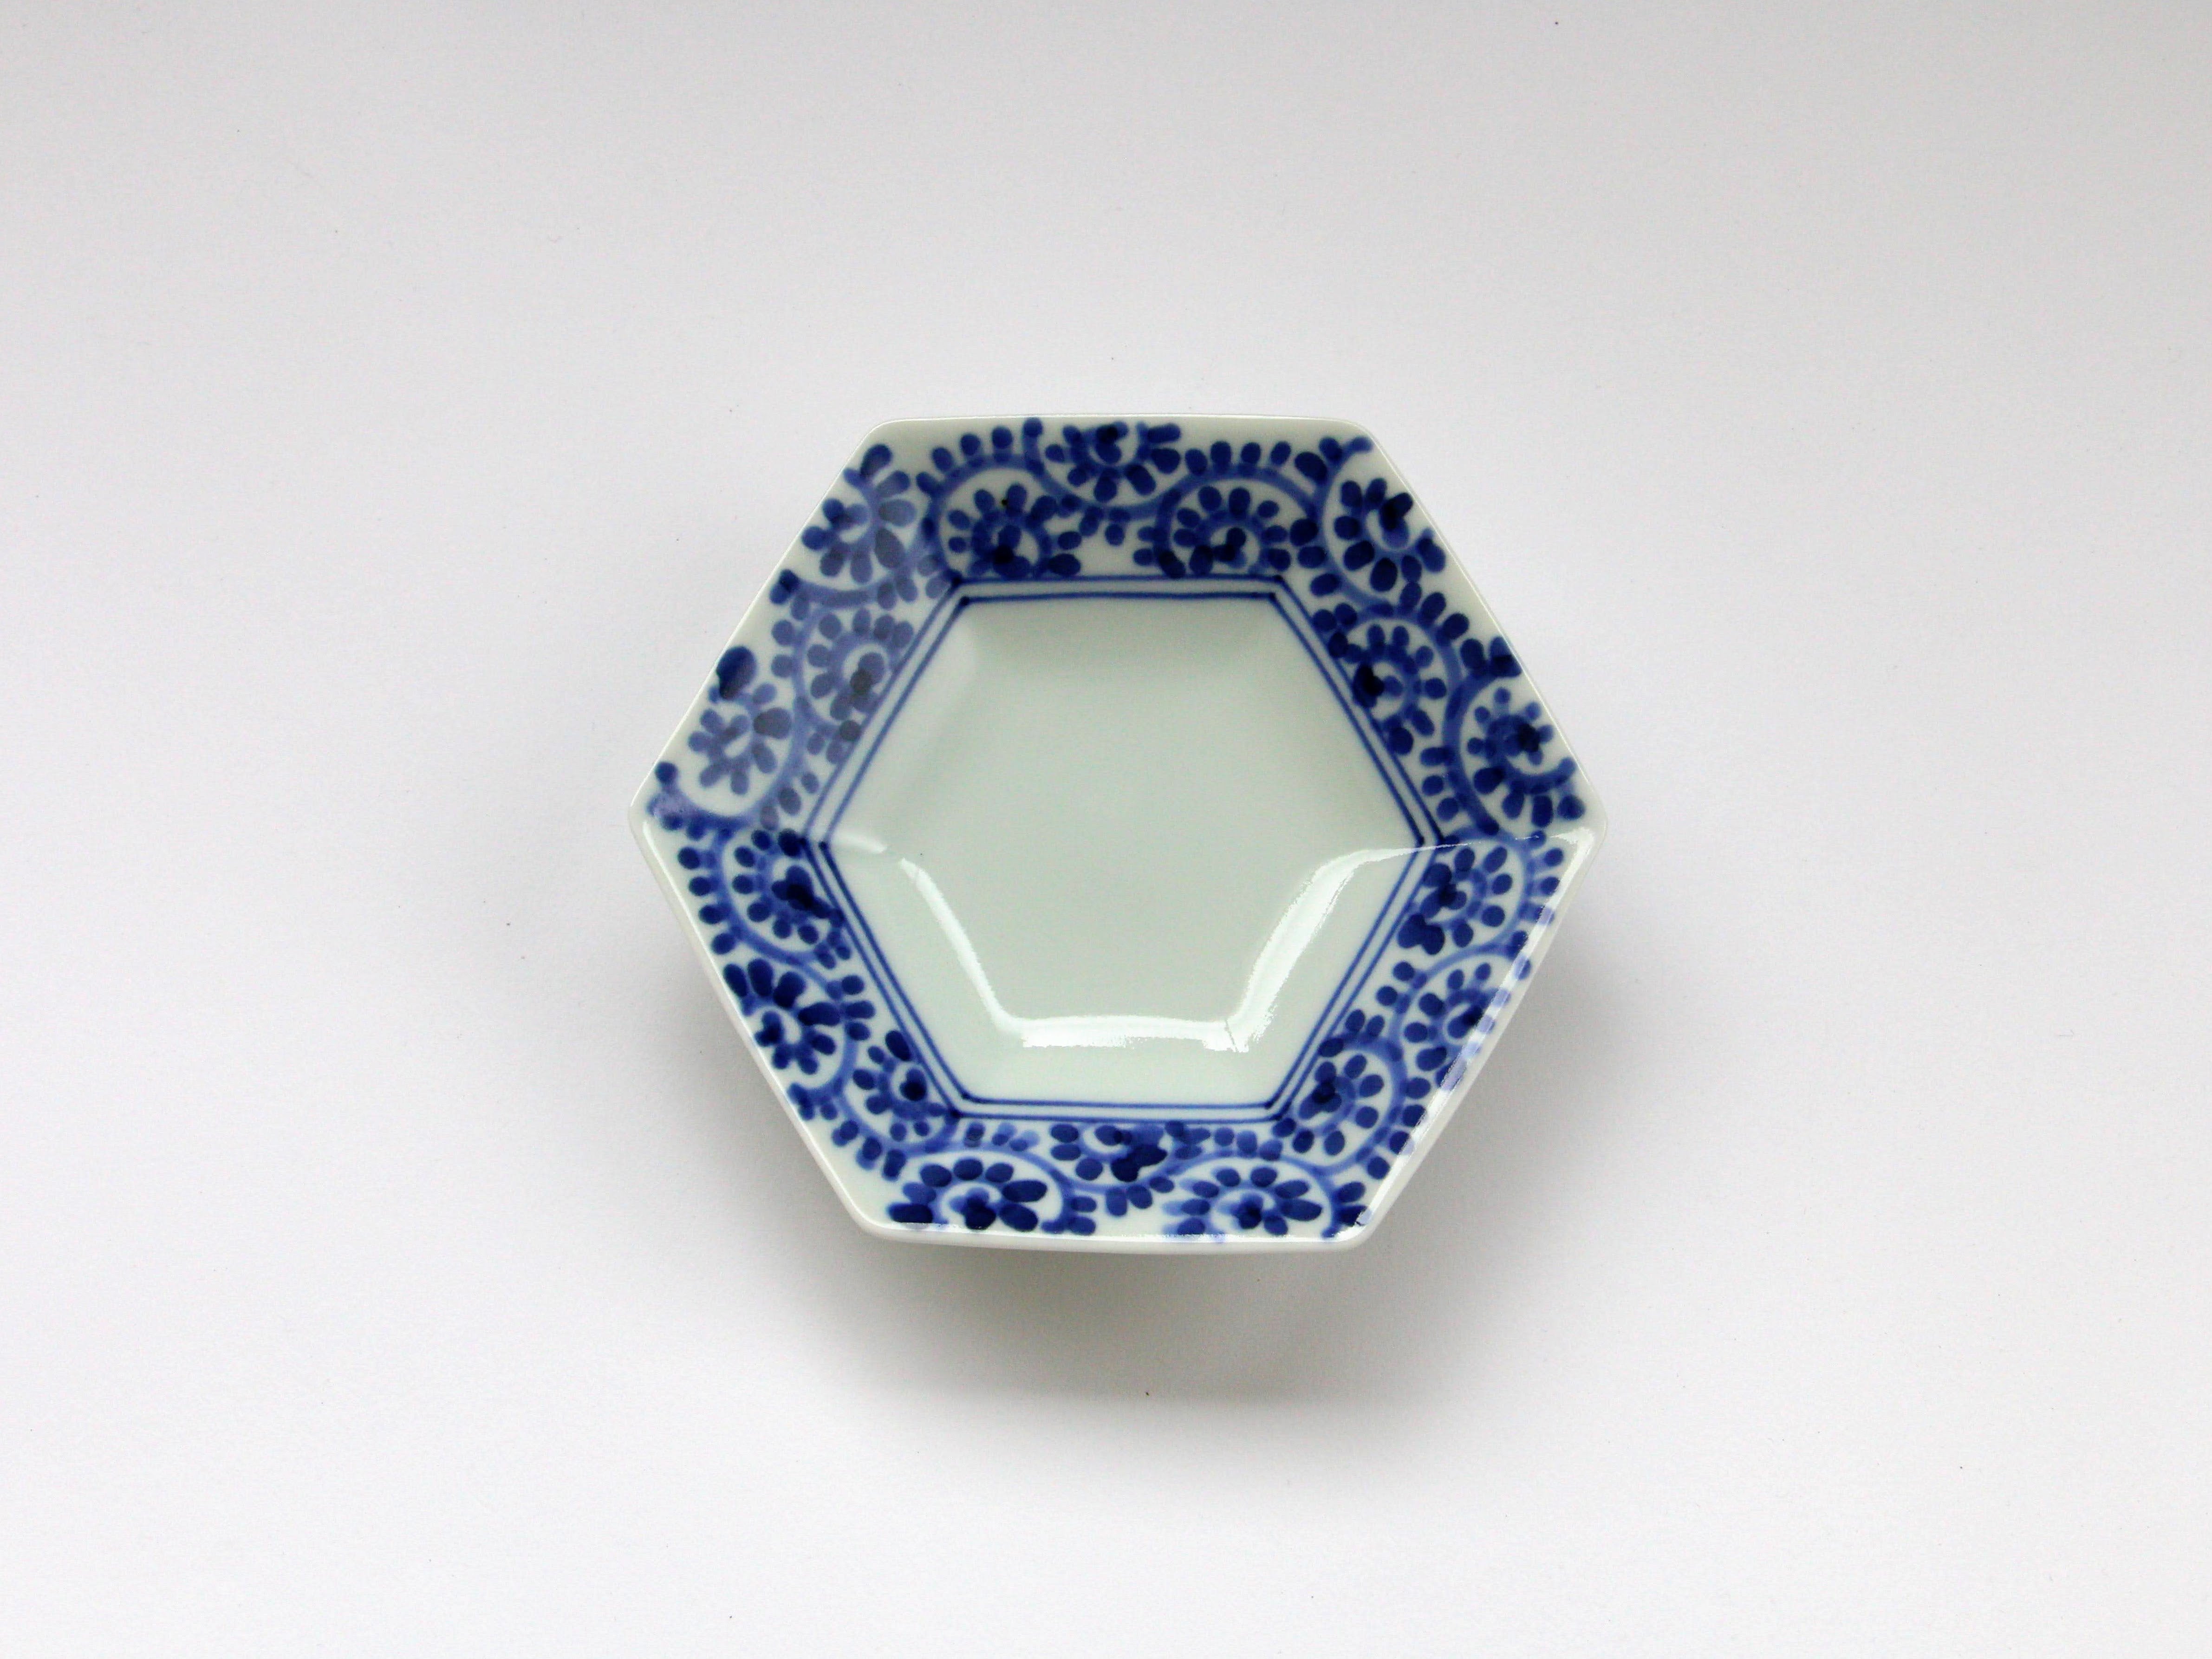 Fuchi octopus arabesque hexagonal plate [Ken Kaji porcelain]